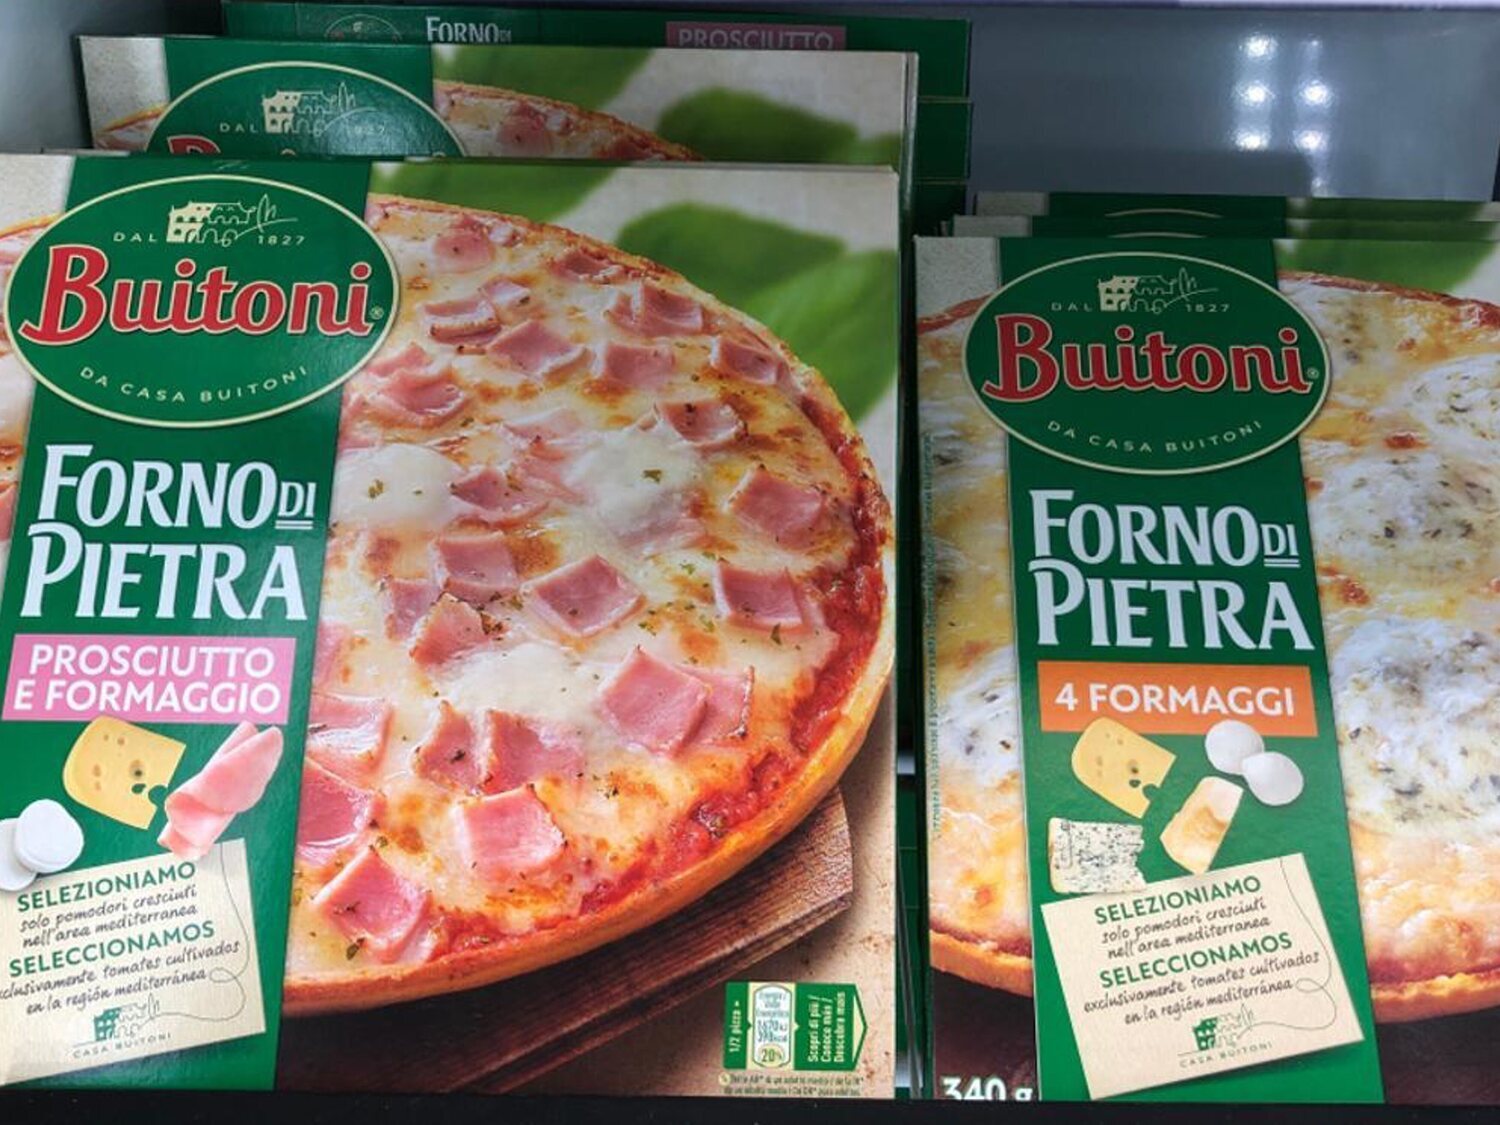 Nestlé cierra la fábrica de Buitoni tras las pizzas contaminadas que han dejado dos muertos y decenas de afectados